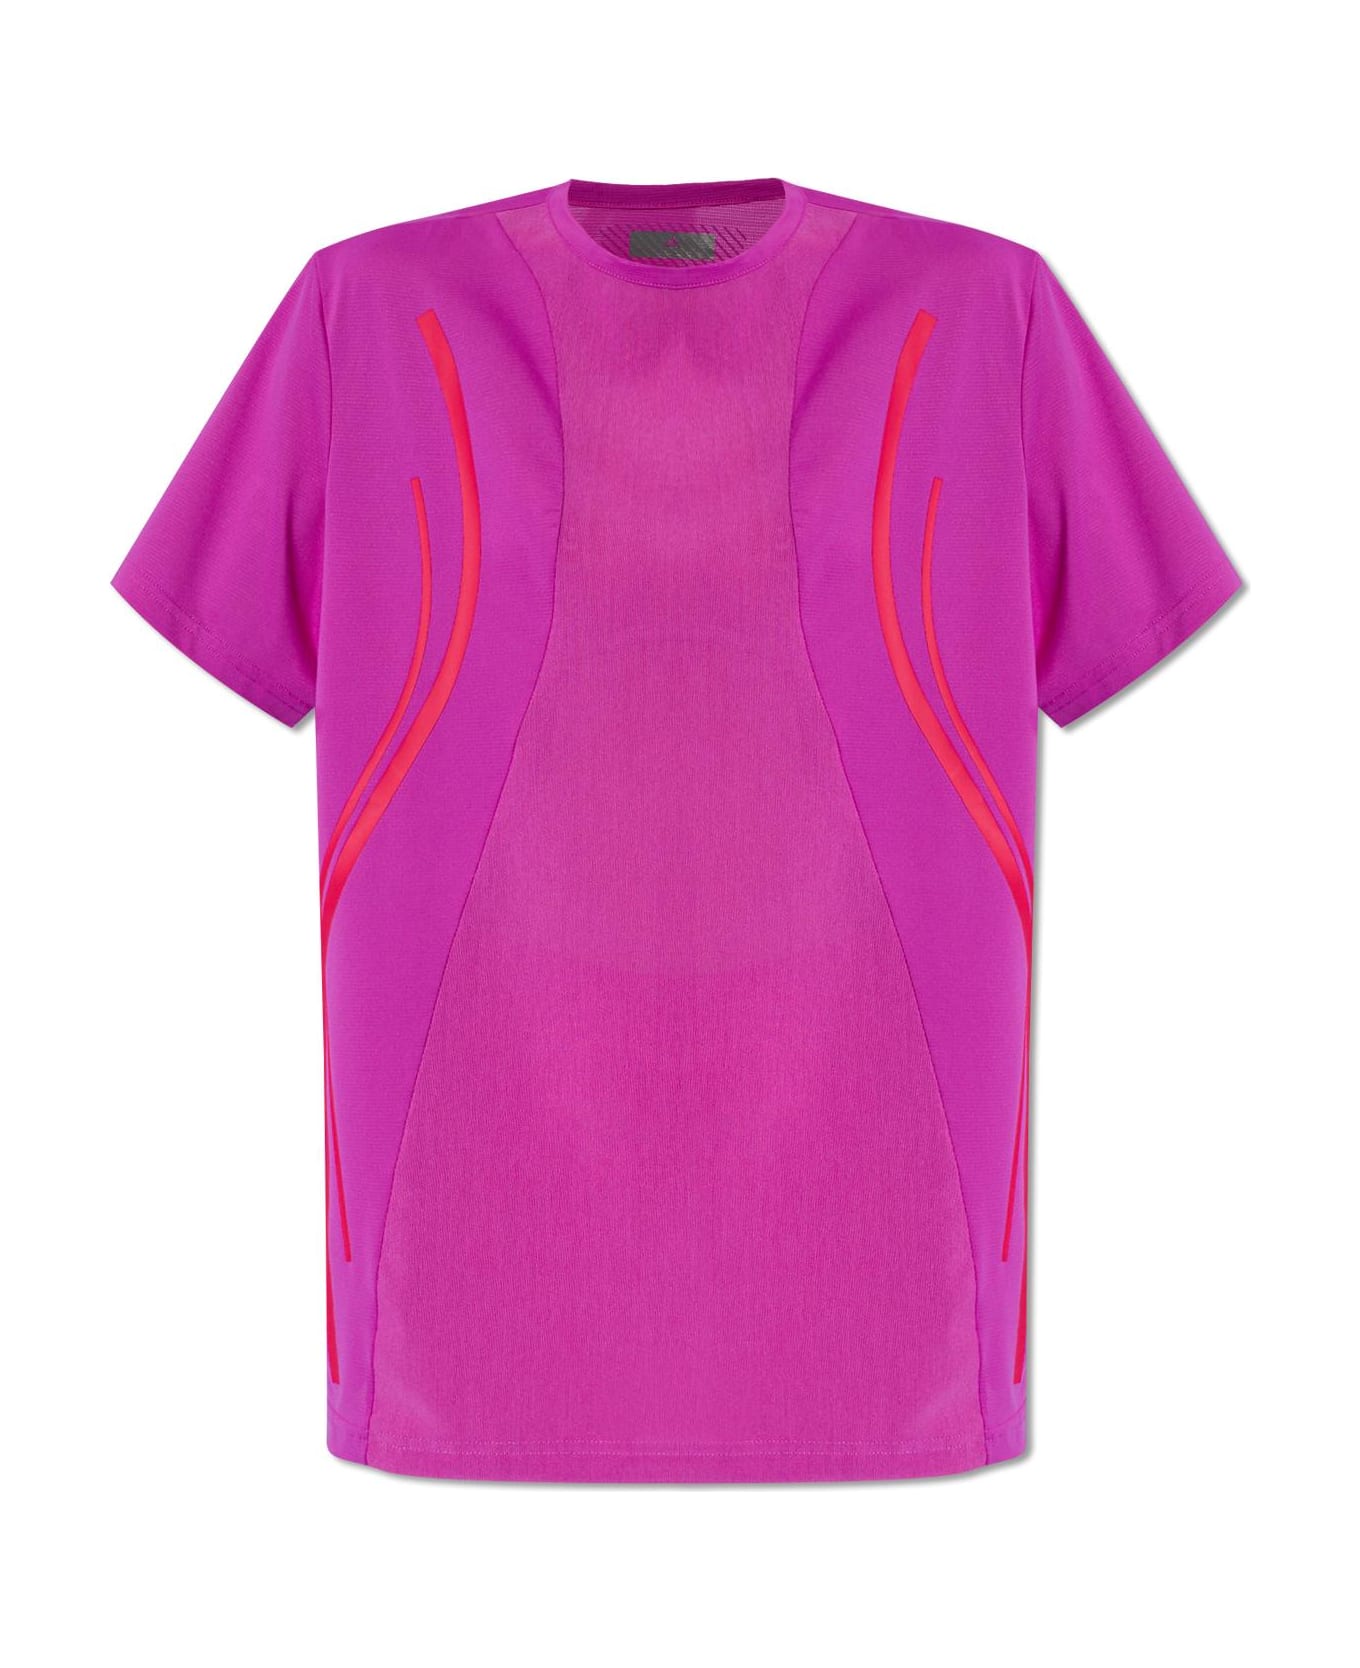 Adidas by Stella McCartney Training T-shirt - Fuchsia Tシャツ